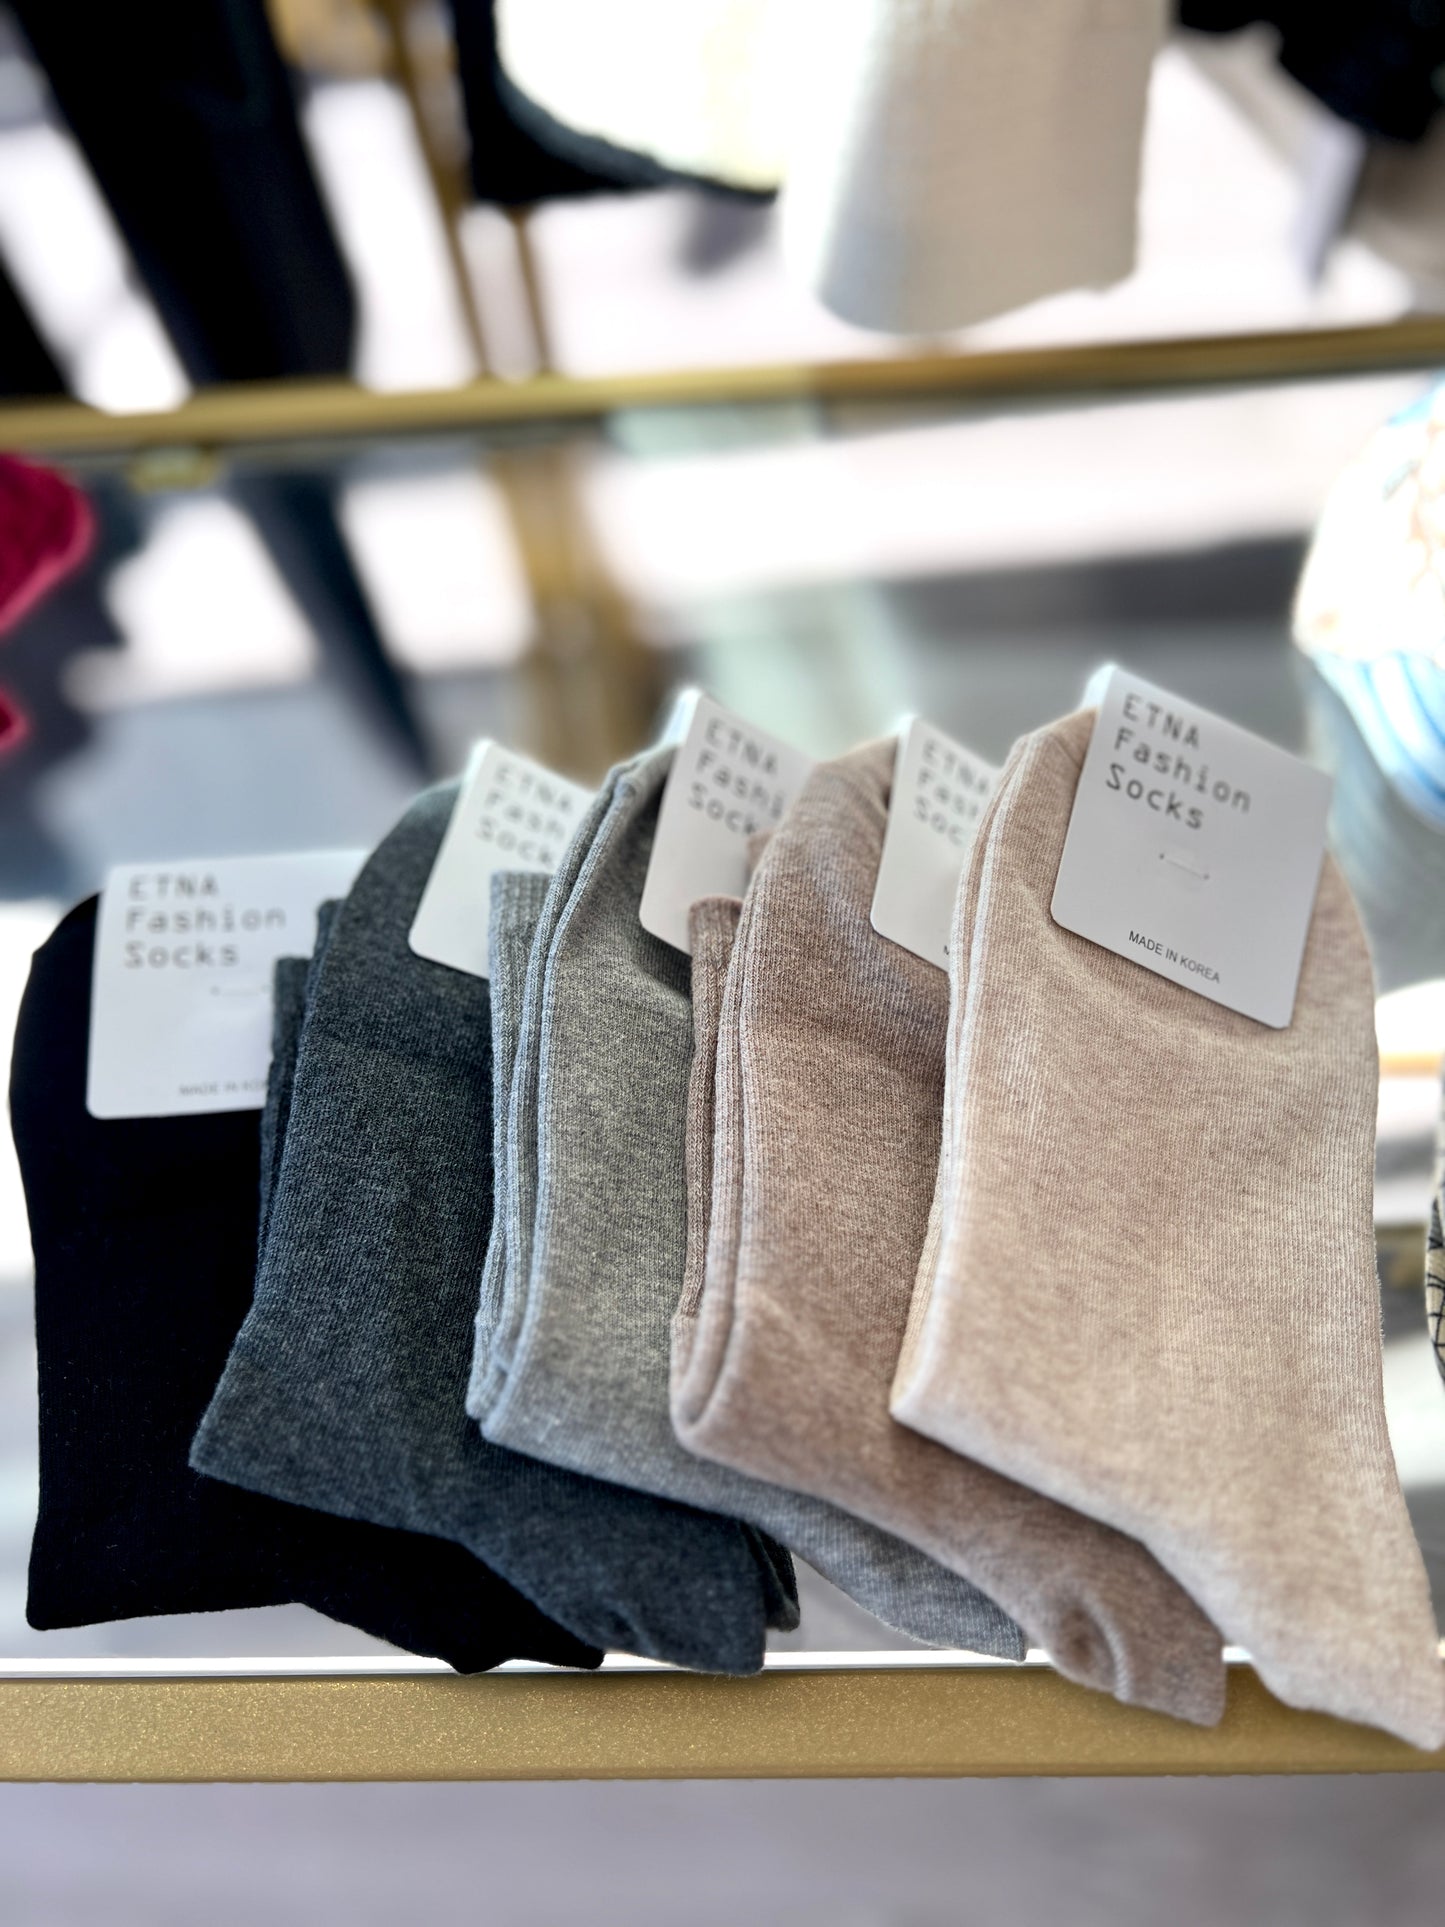 ETNA Fashion Socks (5pairs)